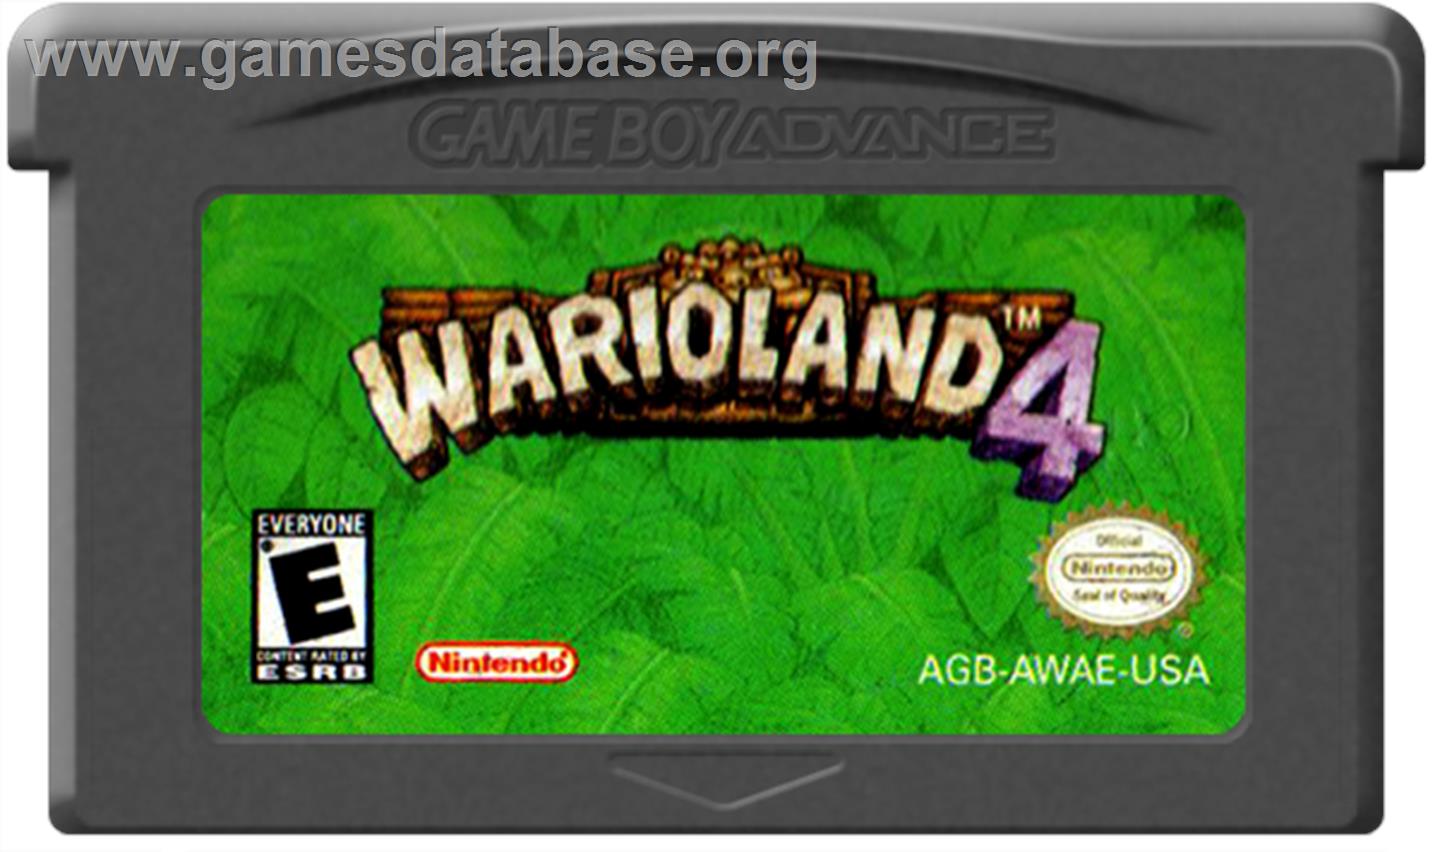 Wario Land 4 - Nintendo Game Boy Advance - Artwork - Cartridge